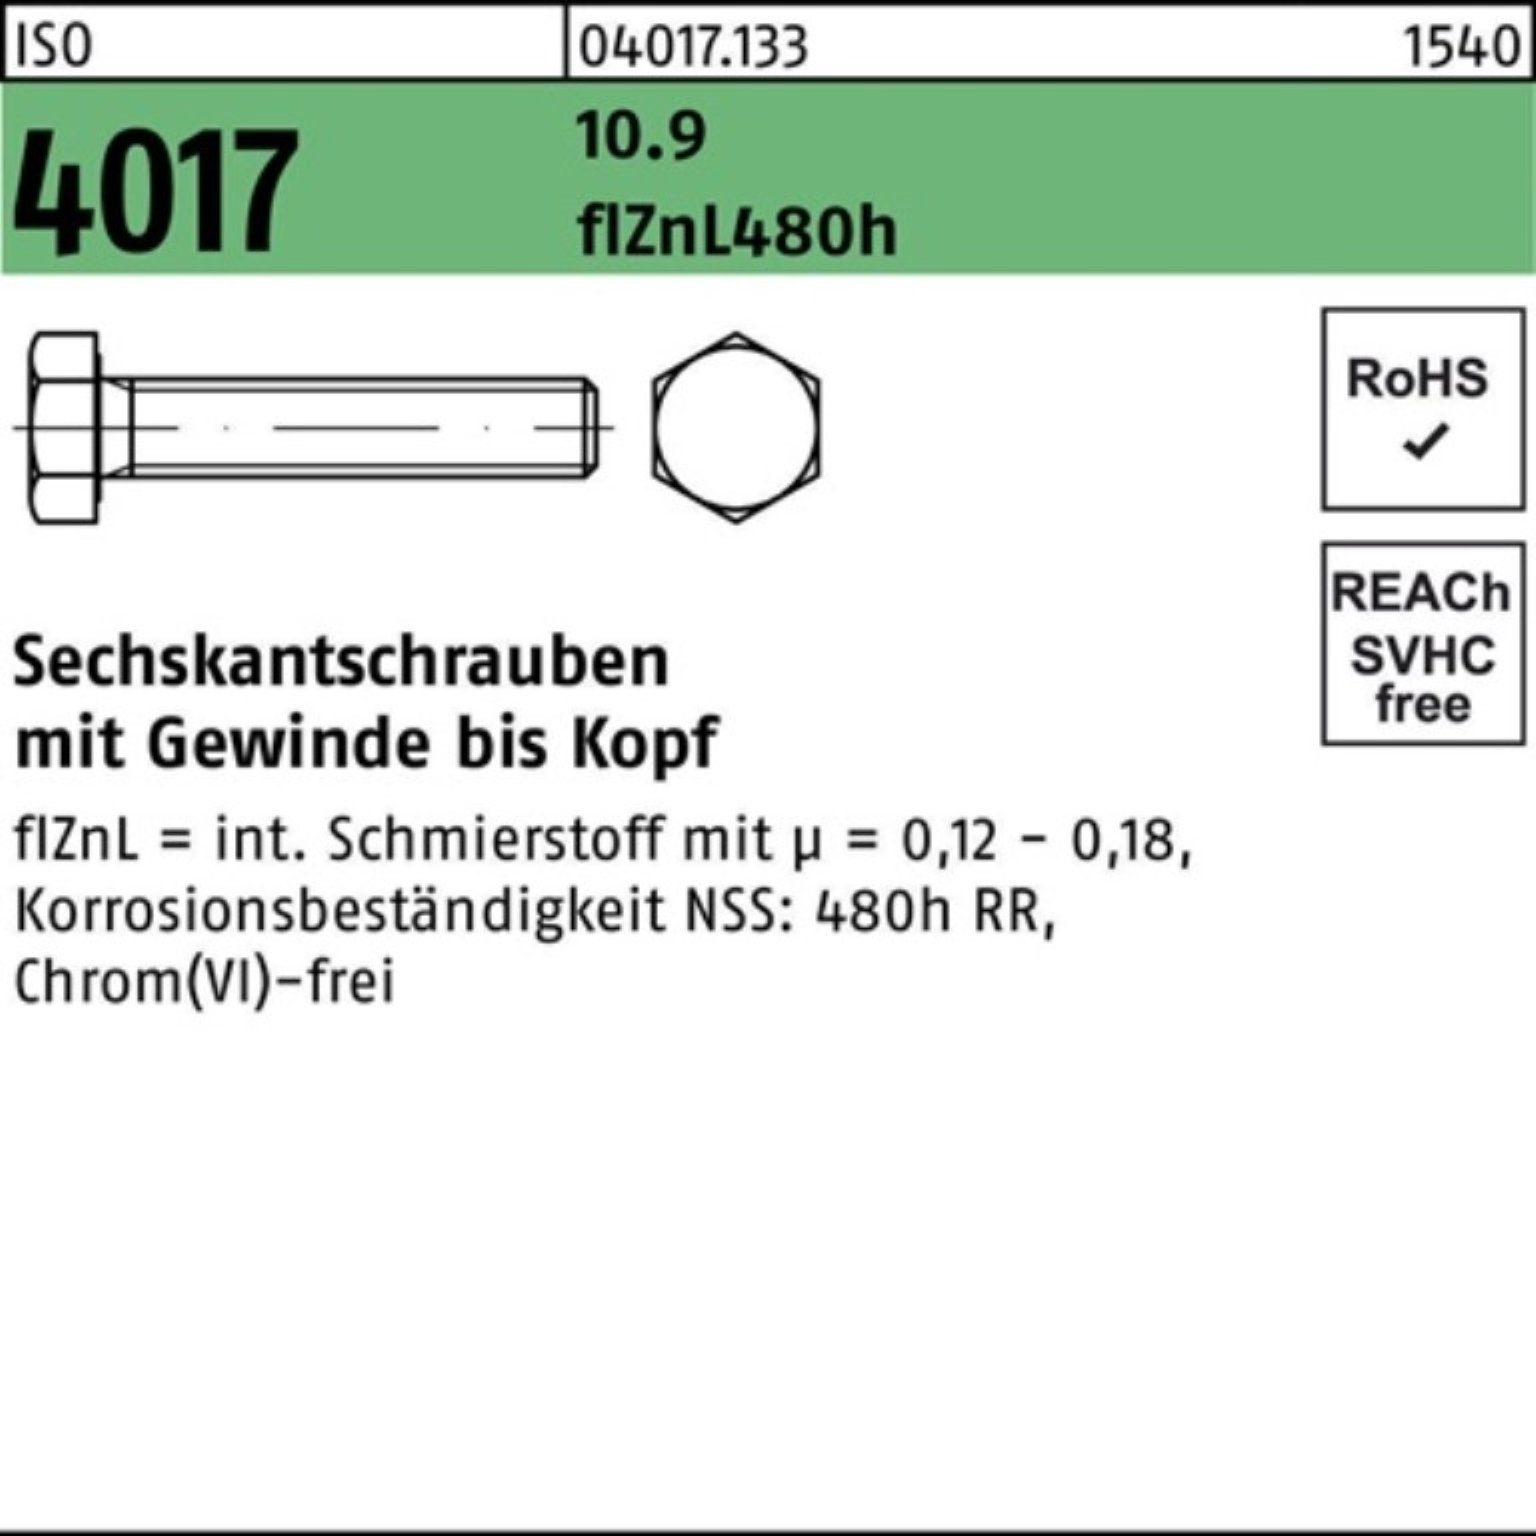 Pack Sechskantschraube 80 Sechskantschraube 4017 VG zinklamellenb. Bufab ISO 100er 2 10.9 M16x